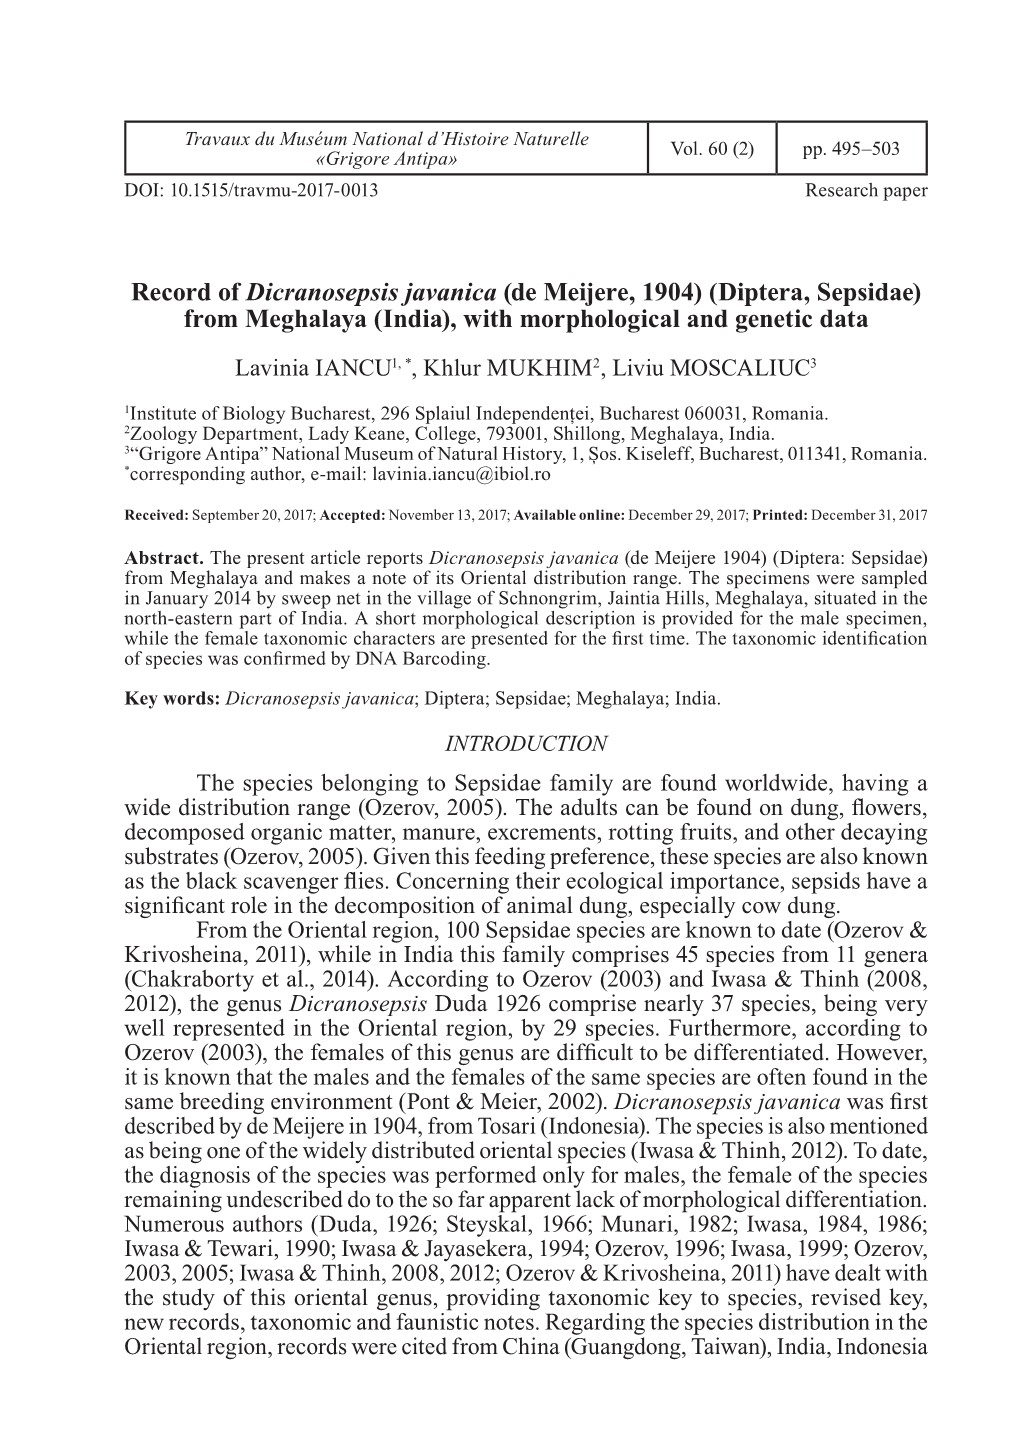 Diptera, Sepsidae) from Meghalaya (India), with Morphological and Genetic Data Lavinia IANCU1, *, Khlur MUKHIM2, Liviu MOSCALIUC3